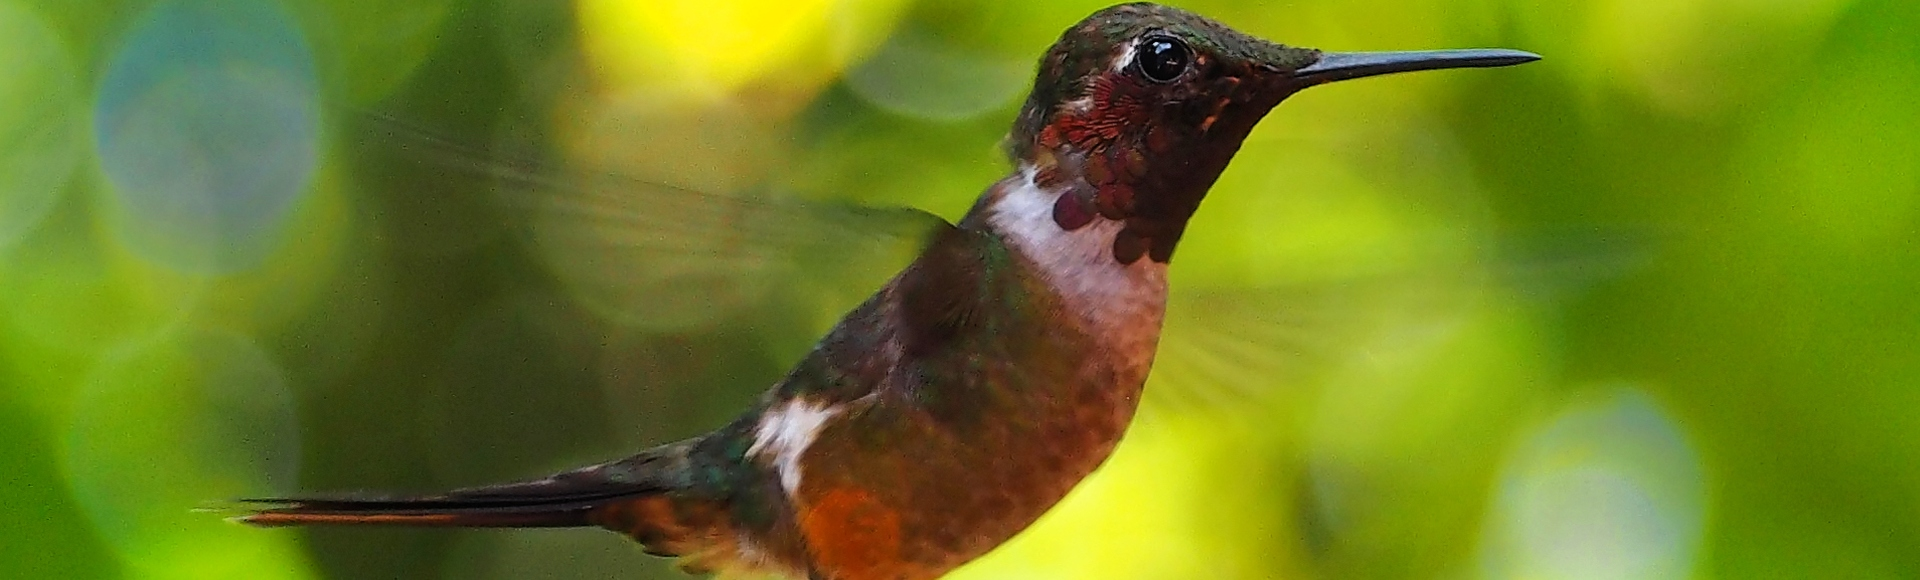 Colibri 2 - Costa Rica - DESTINATIONS LATINES